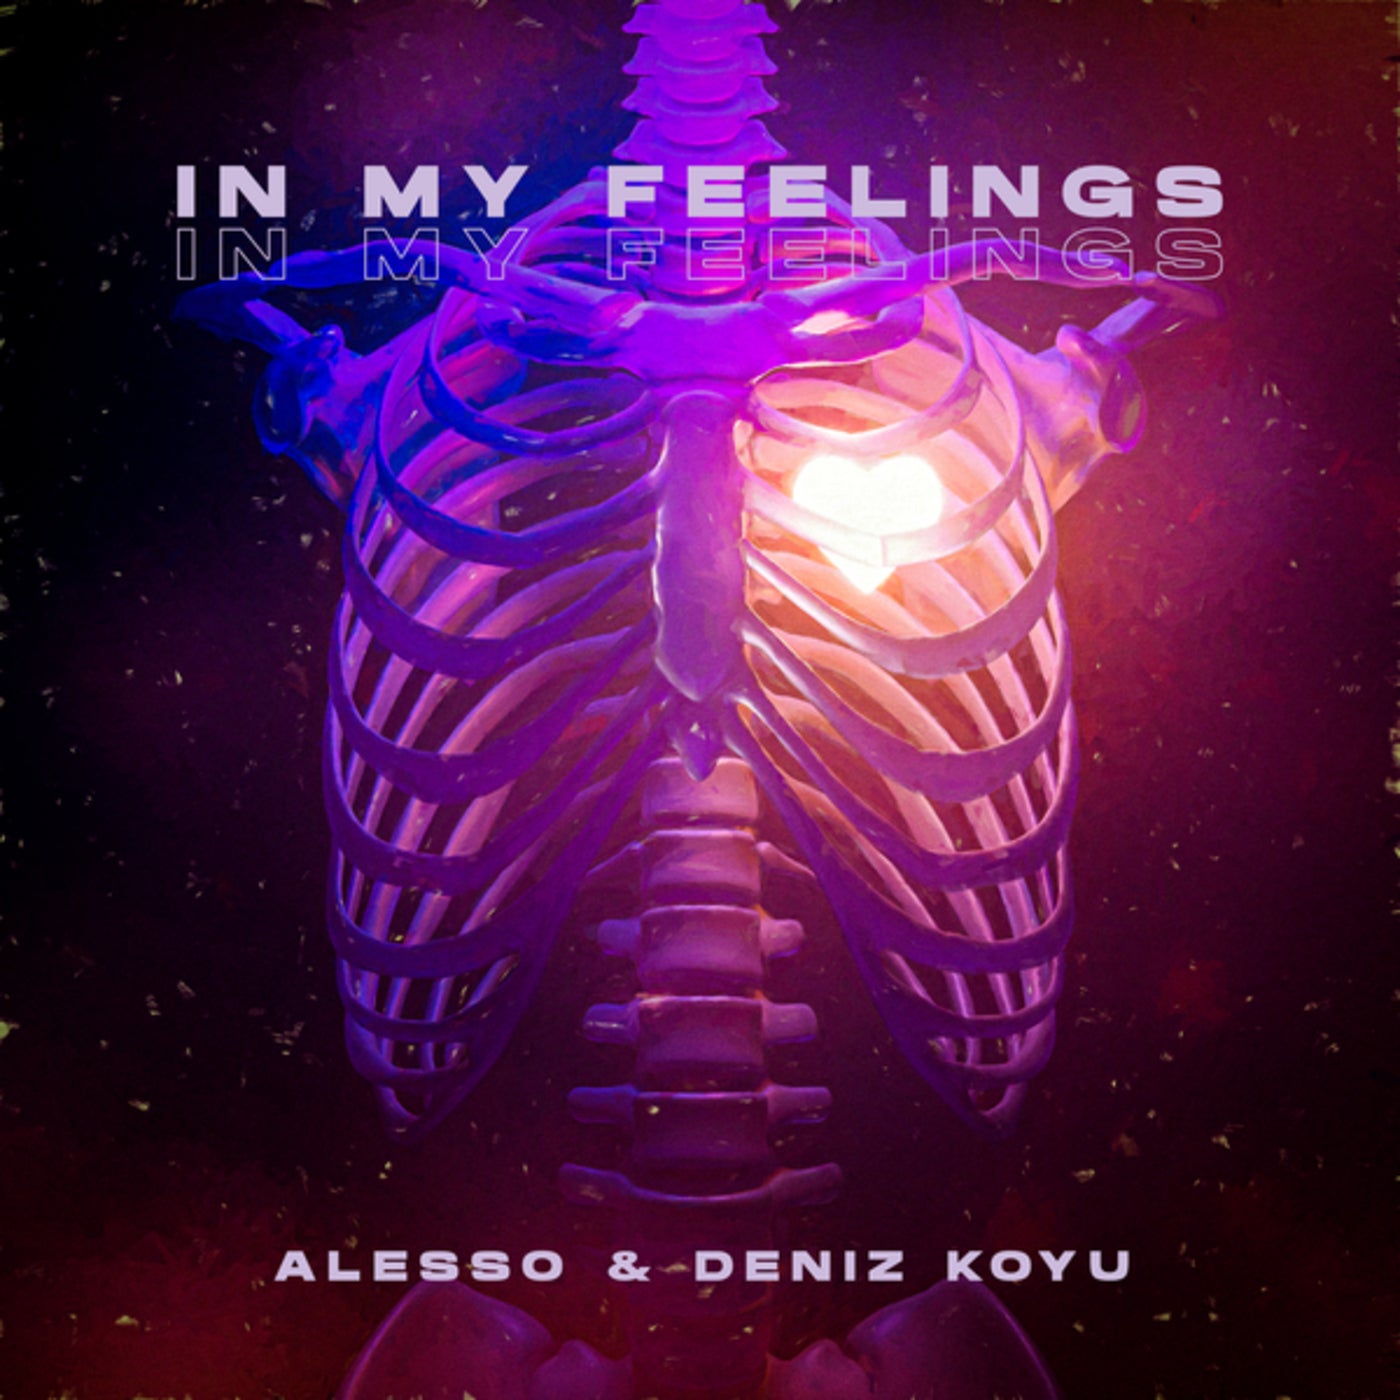 Alesso & Deniz Koyu — In My Feelings cover artwork